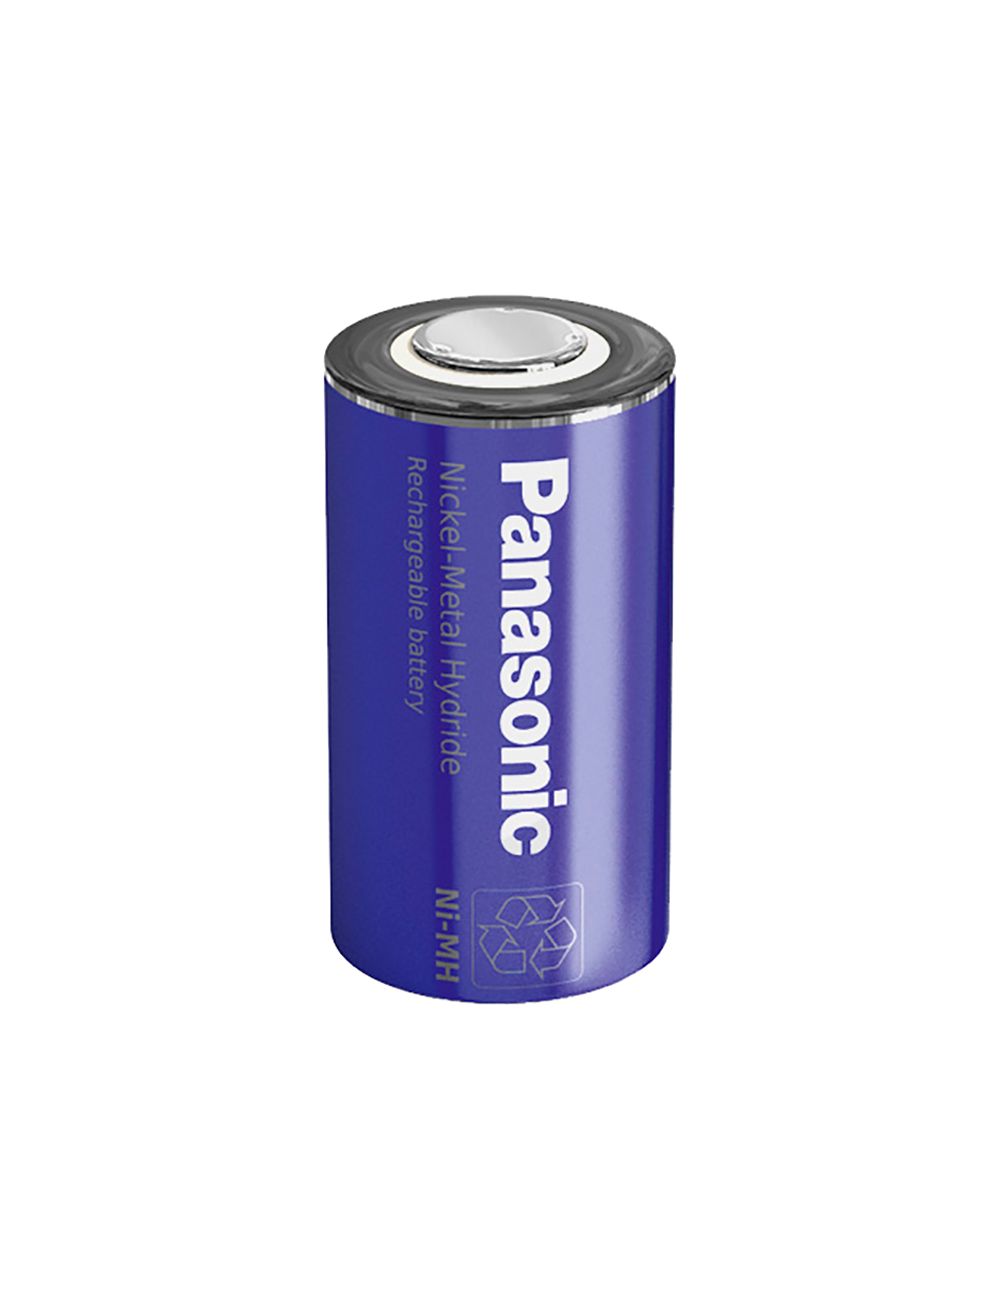 Bateria SubC (Cs) 1,2V 3050mAh Ni-Mh Panasonic alta descarga e carga rápida - 1